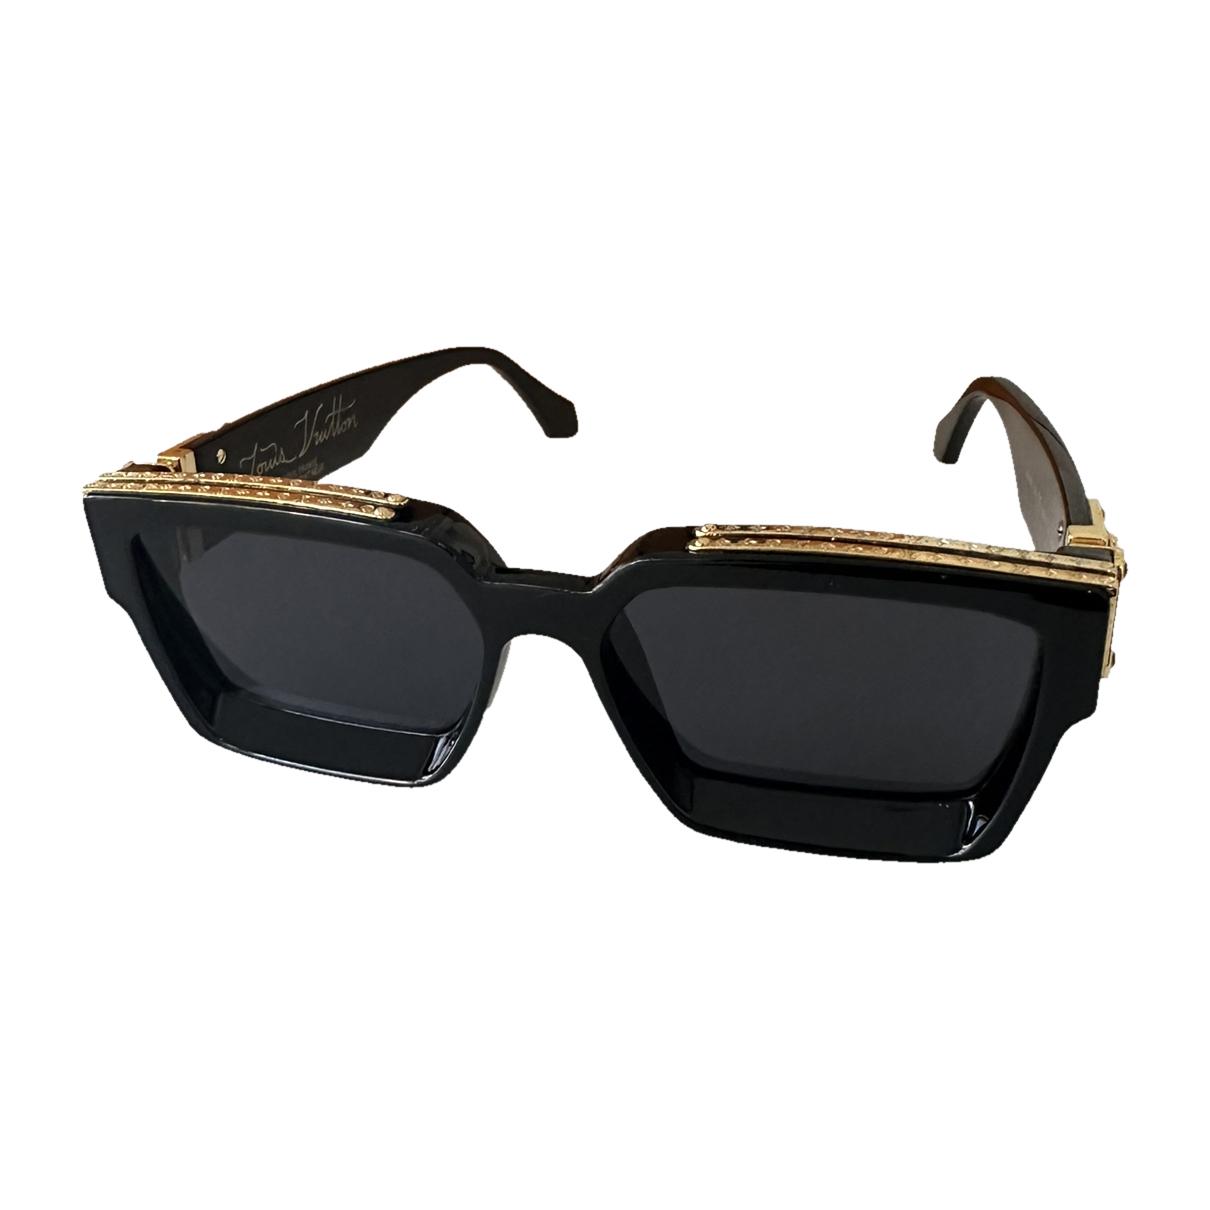 Sunglasses Louis Vuitton Black in Plastic - 32464240